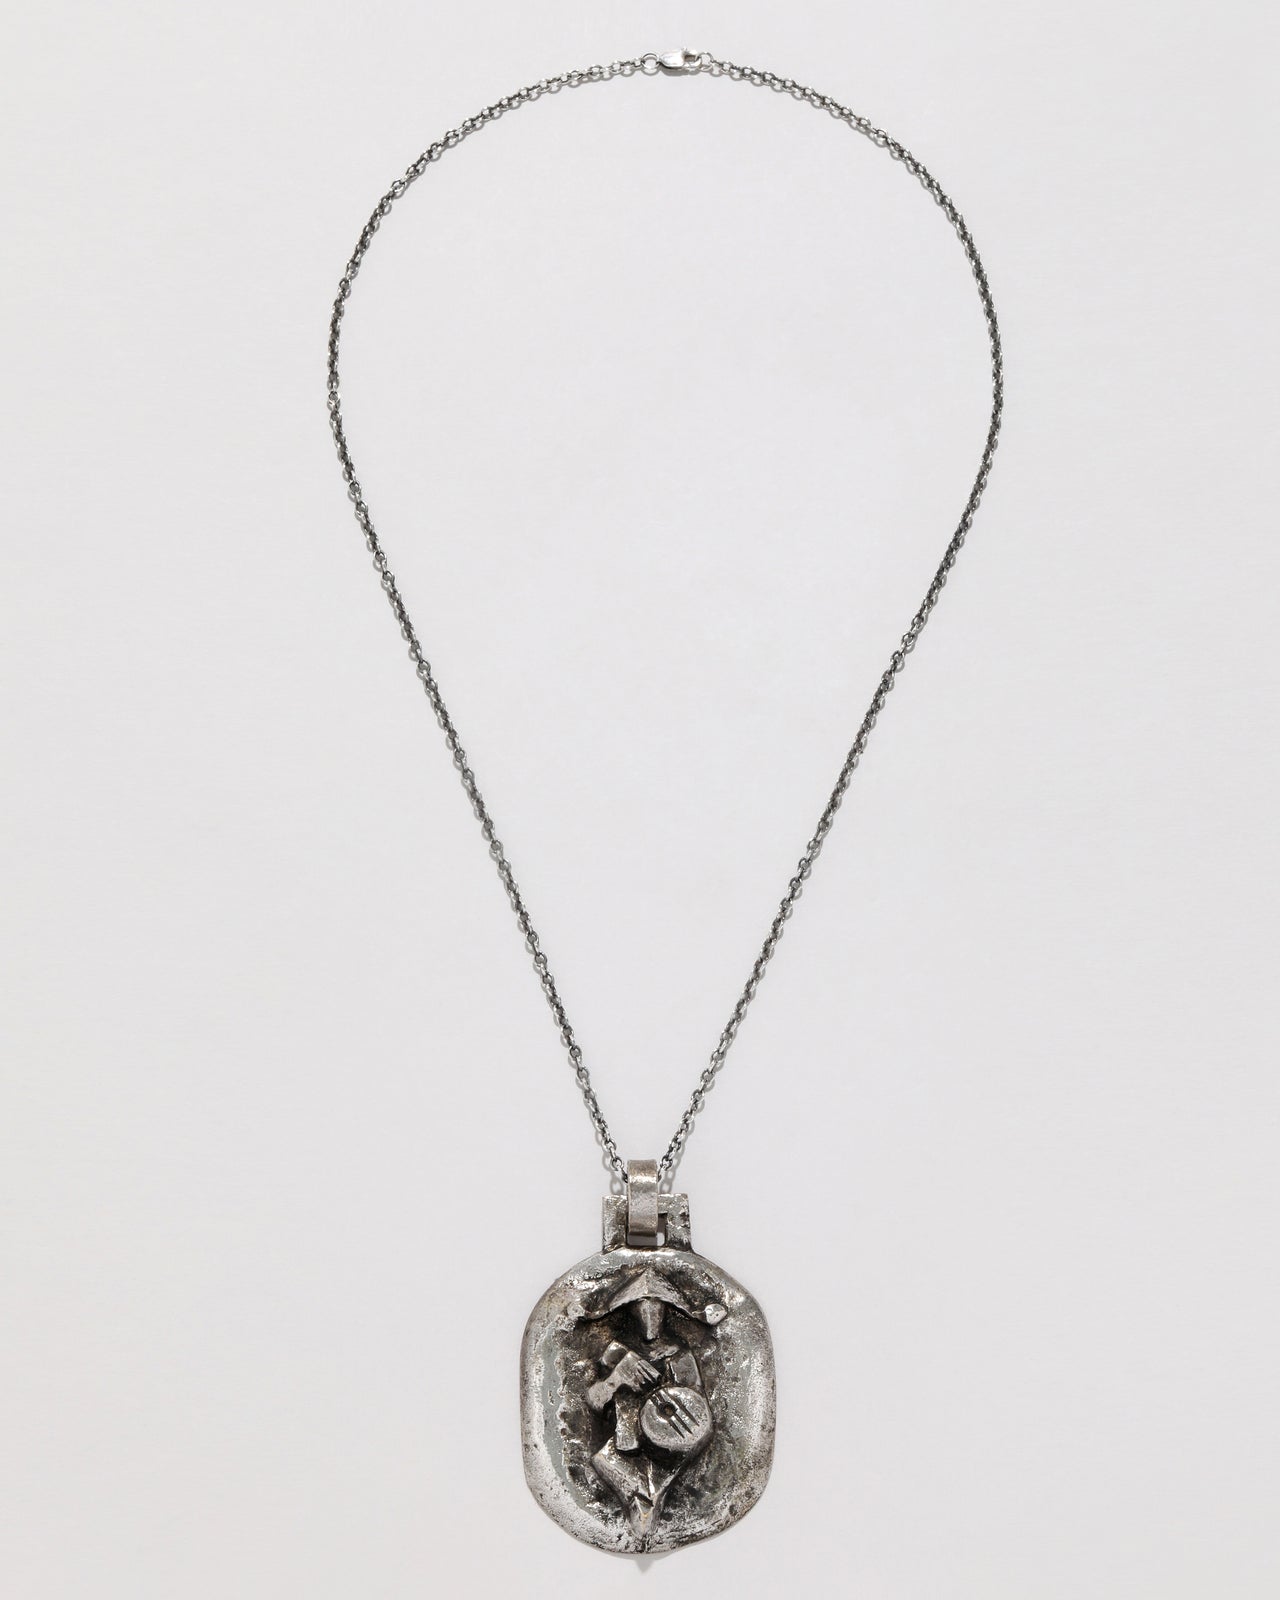 Vintage 1950s Modernist Sterling Silver Handmade Modernist Pendant Necklace - Photo 2